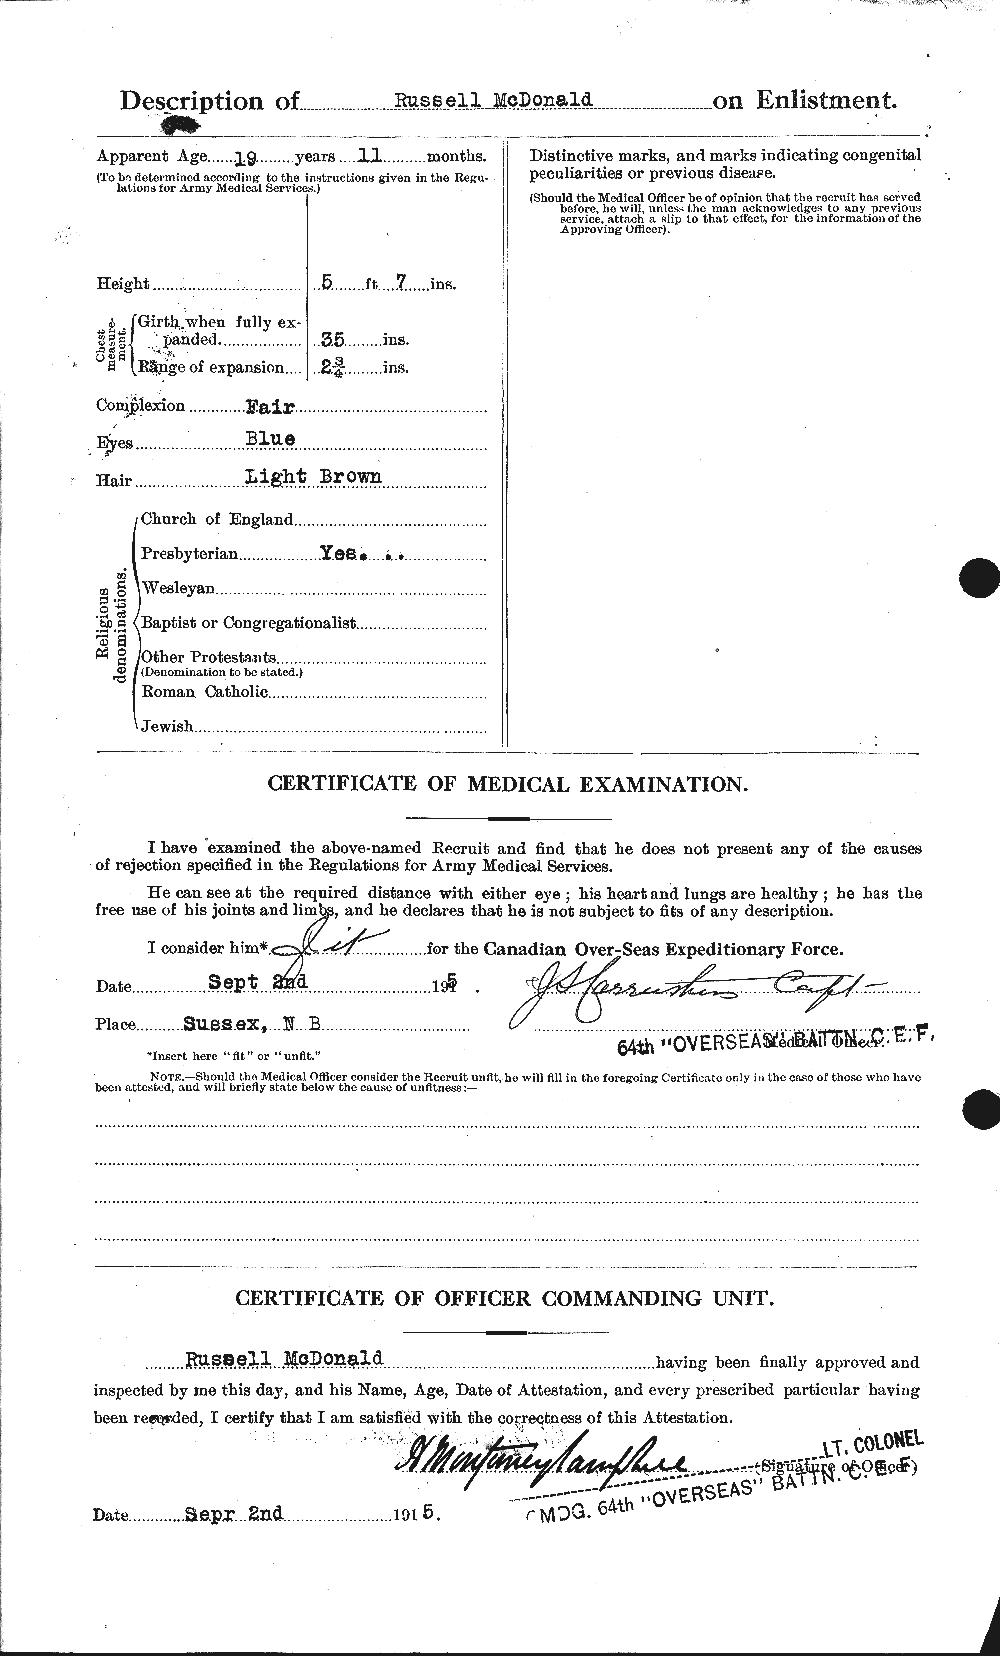 Dossiers du Personnel de la Première Guerre mondiale - CEC 515868b